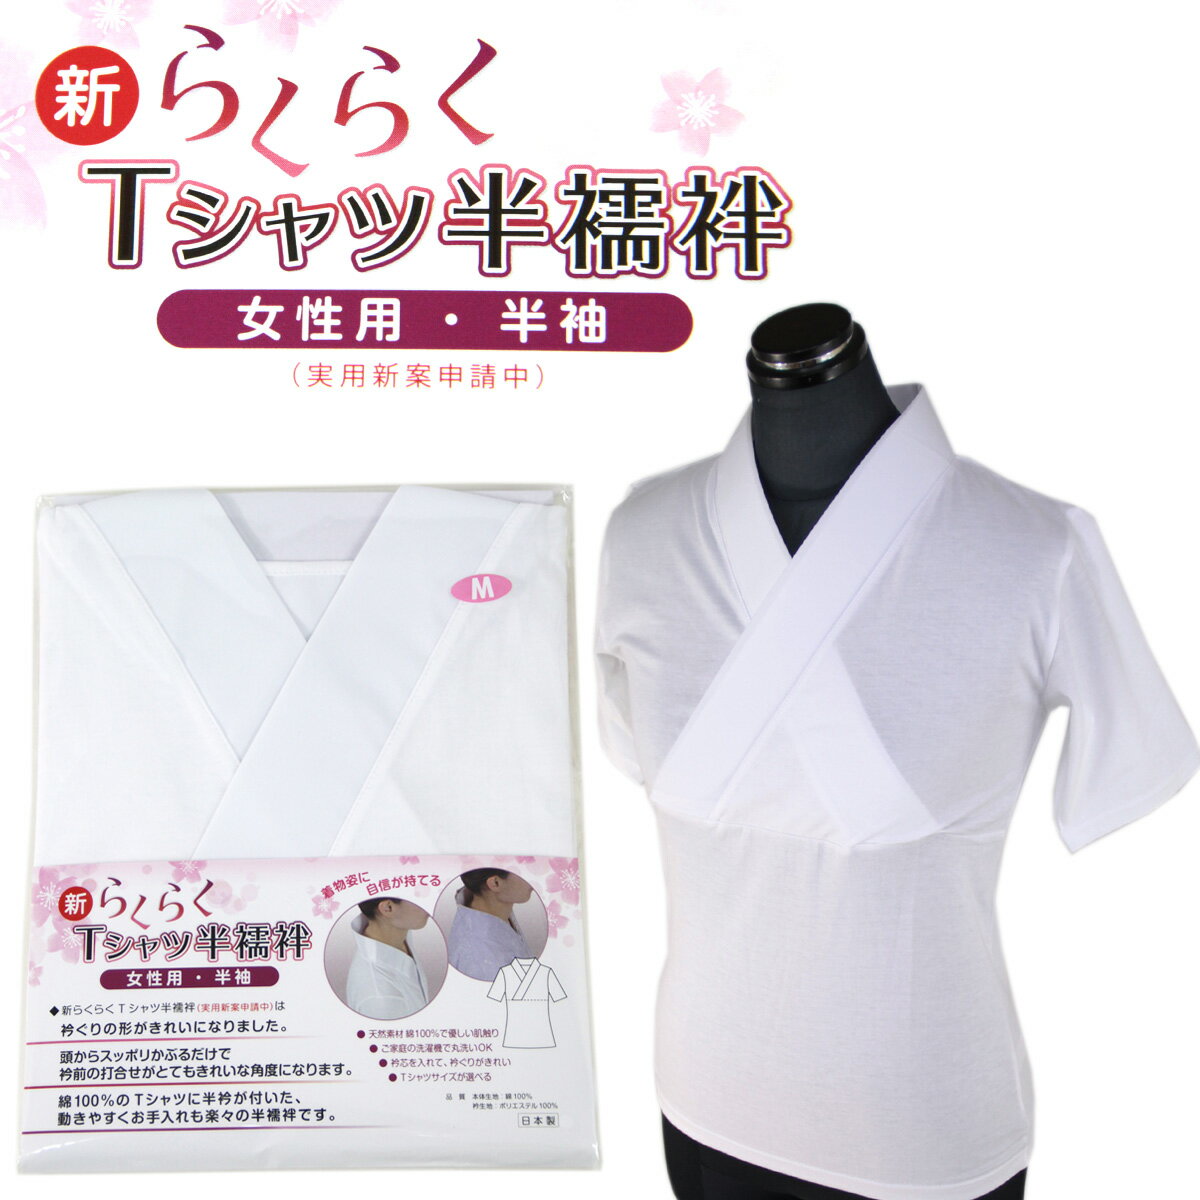 新らくらくTシャツ半襦袢 女性用 半袖 半衿付き 綿100% M/L/LL-Size